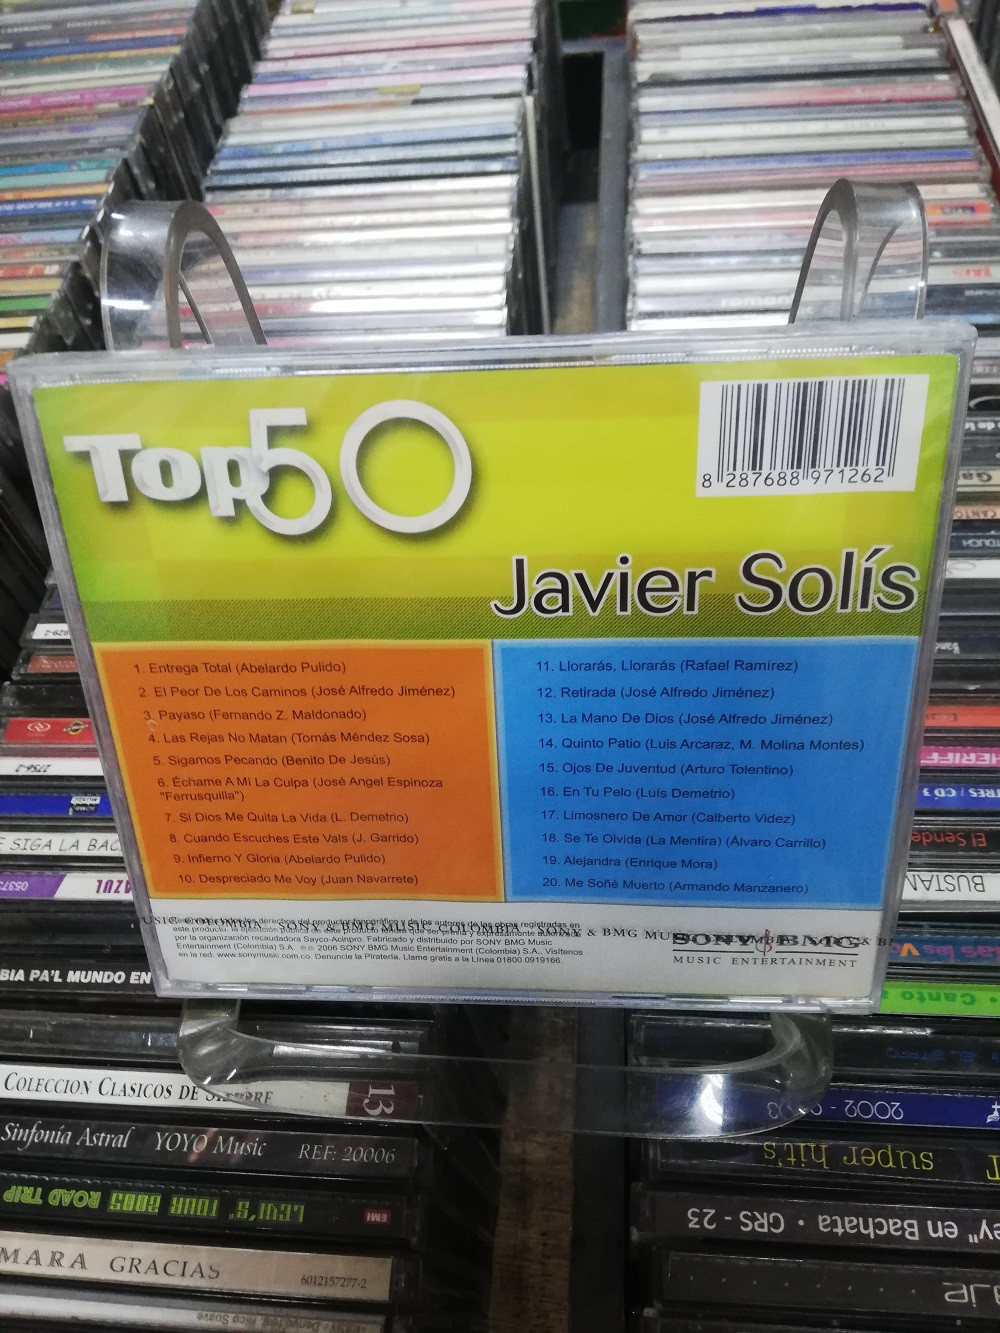 Imagen CD JAVIER SOLIS - COLECCIÓN TOP 50 2